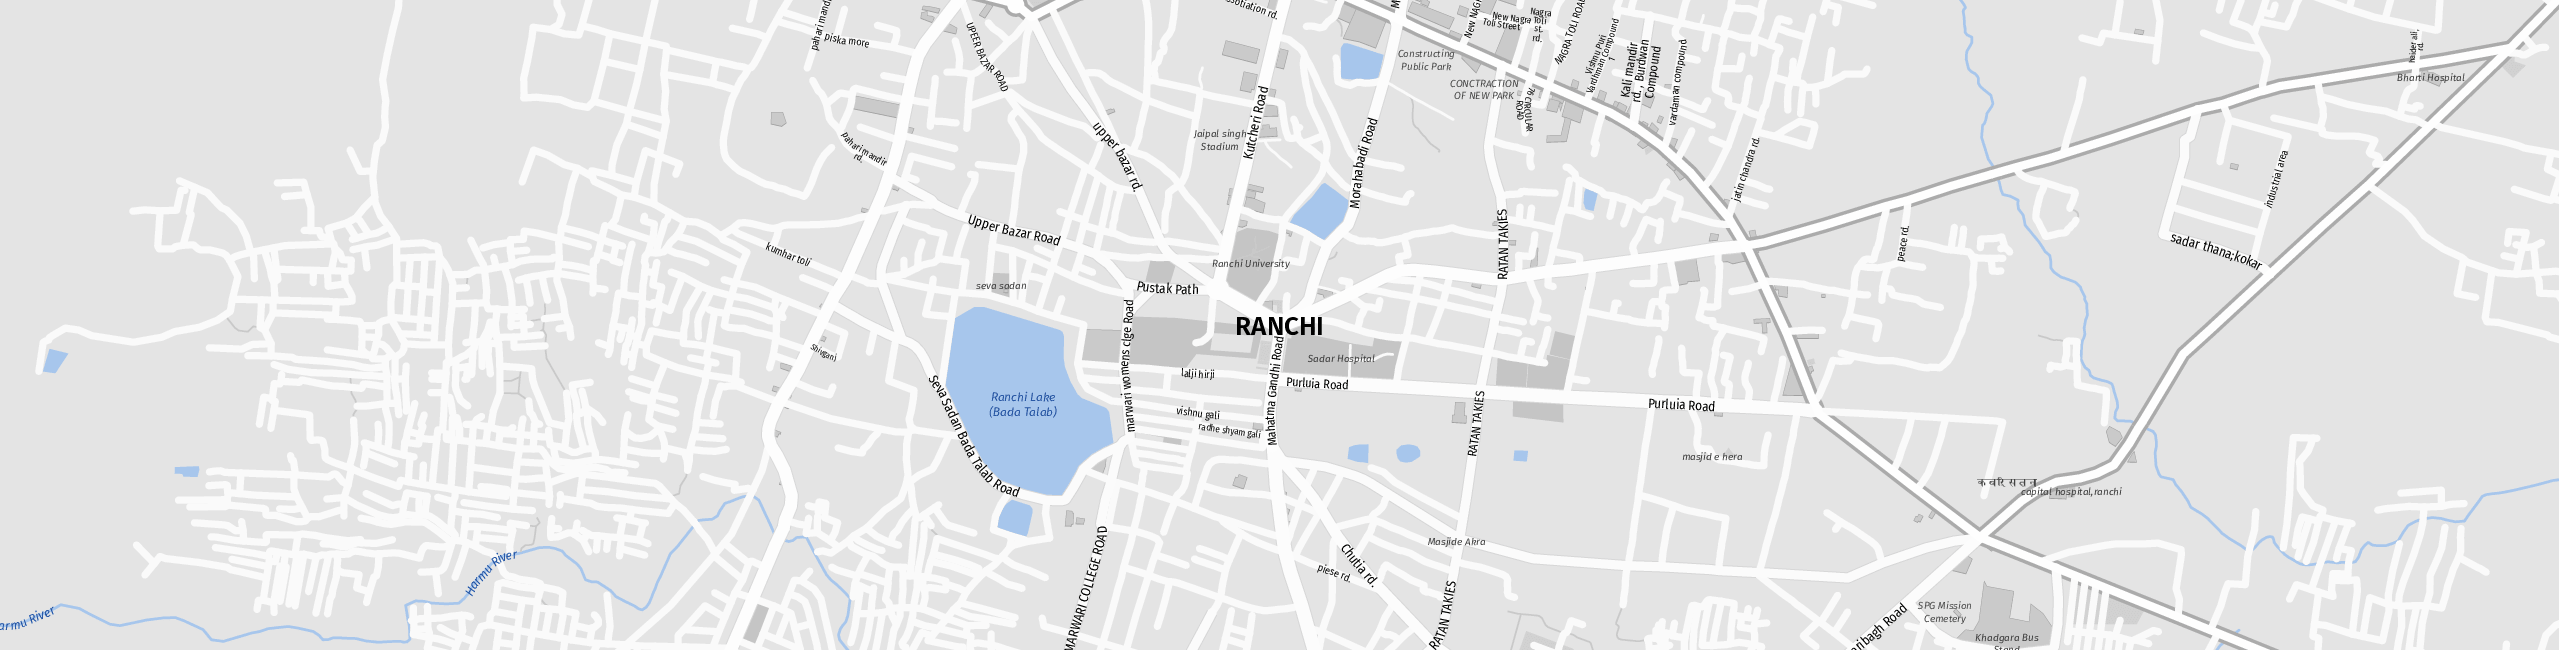 Stadtplan Ranchi zum Downloaden.